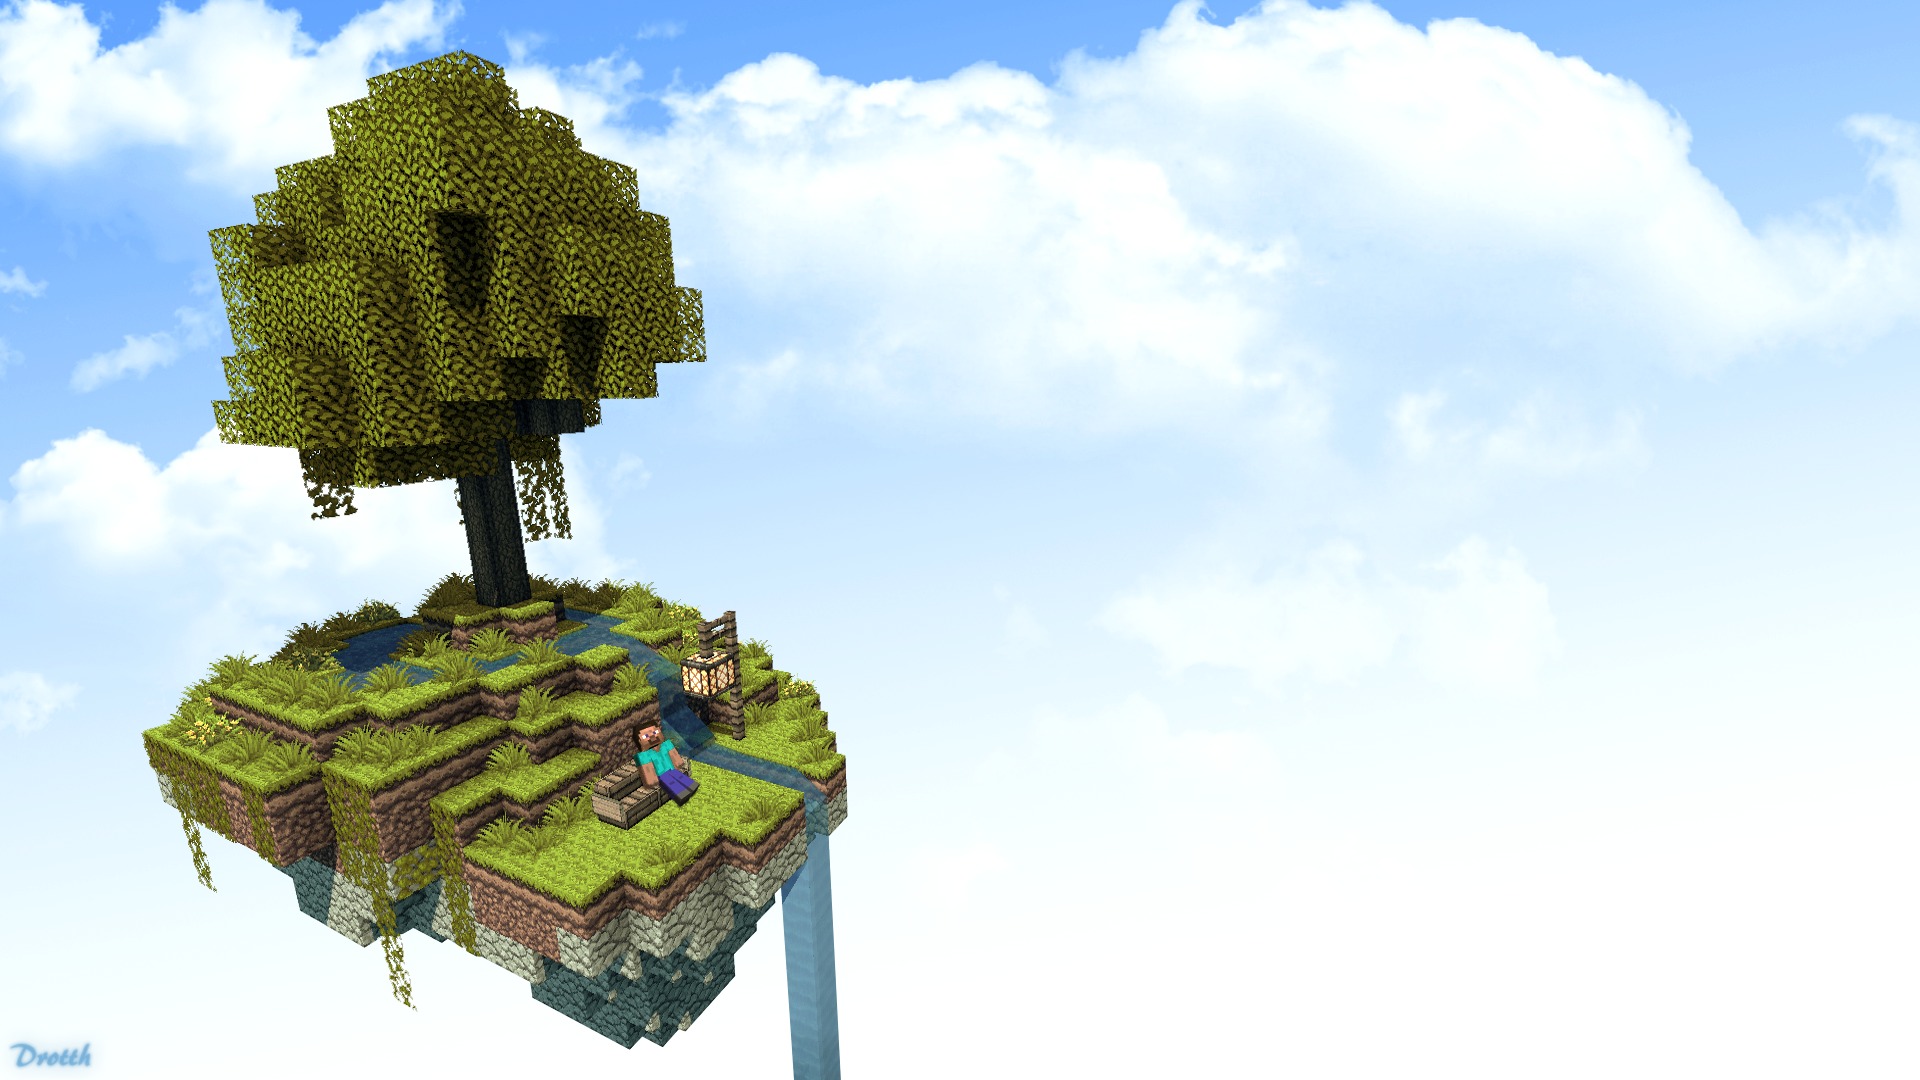 Hình nền Minecraft: Đảo trời đẹp - Hãy chiêm ngưỡng một không gian Minecraft đầy màu sắc và đẹp mắt. Với hình ảnh của một đảo trên trời với rừng cây rực rỡ màu xanh, đồng cỏ mượt mà và một cầu vồng tuyệt đẹp, bạn sẽ không thể rời mắt khỏi bức hình này.